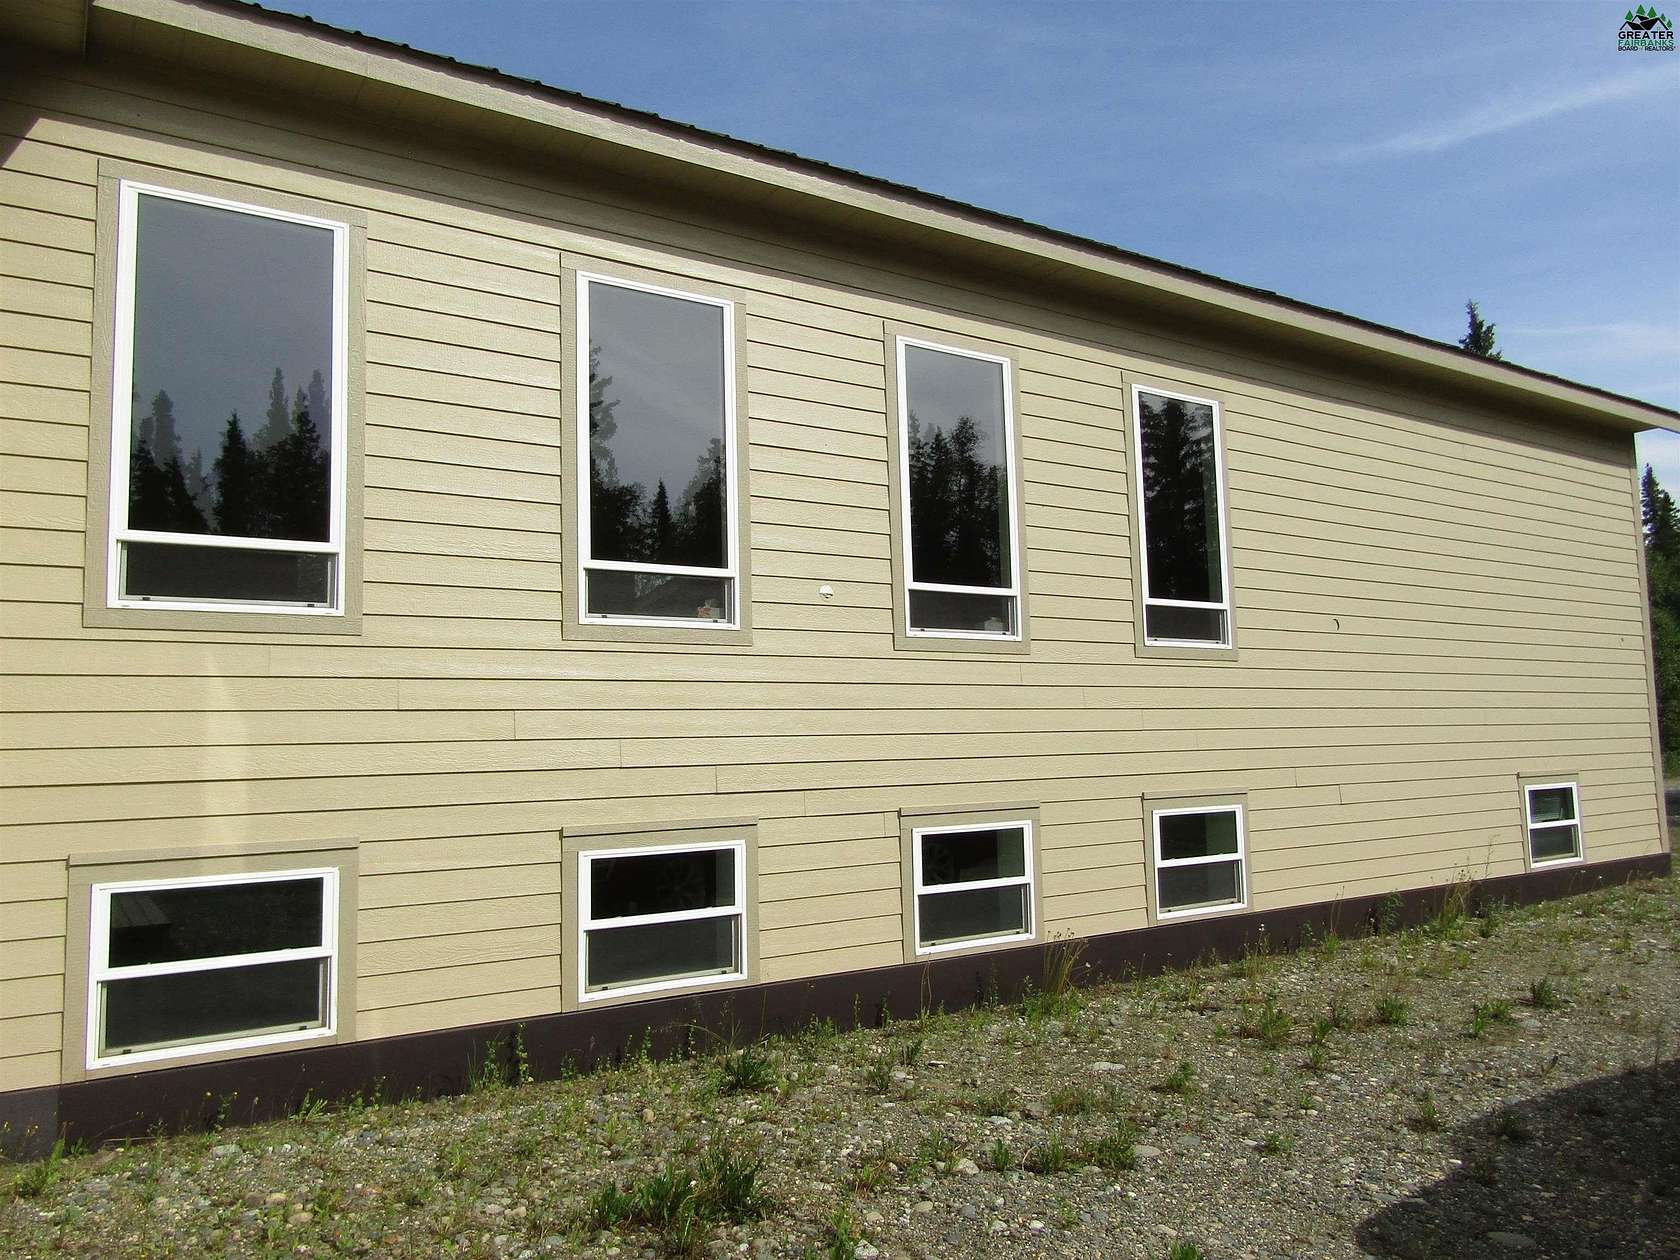 2.06 Acres of Improved Commercial Land for Sale in Delta Junction, Alaska